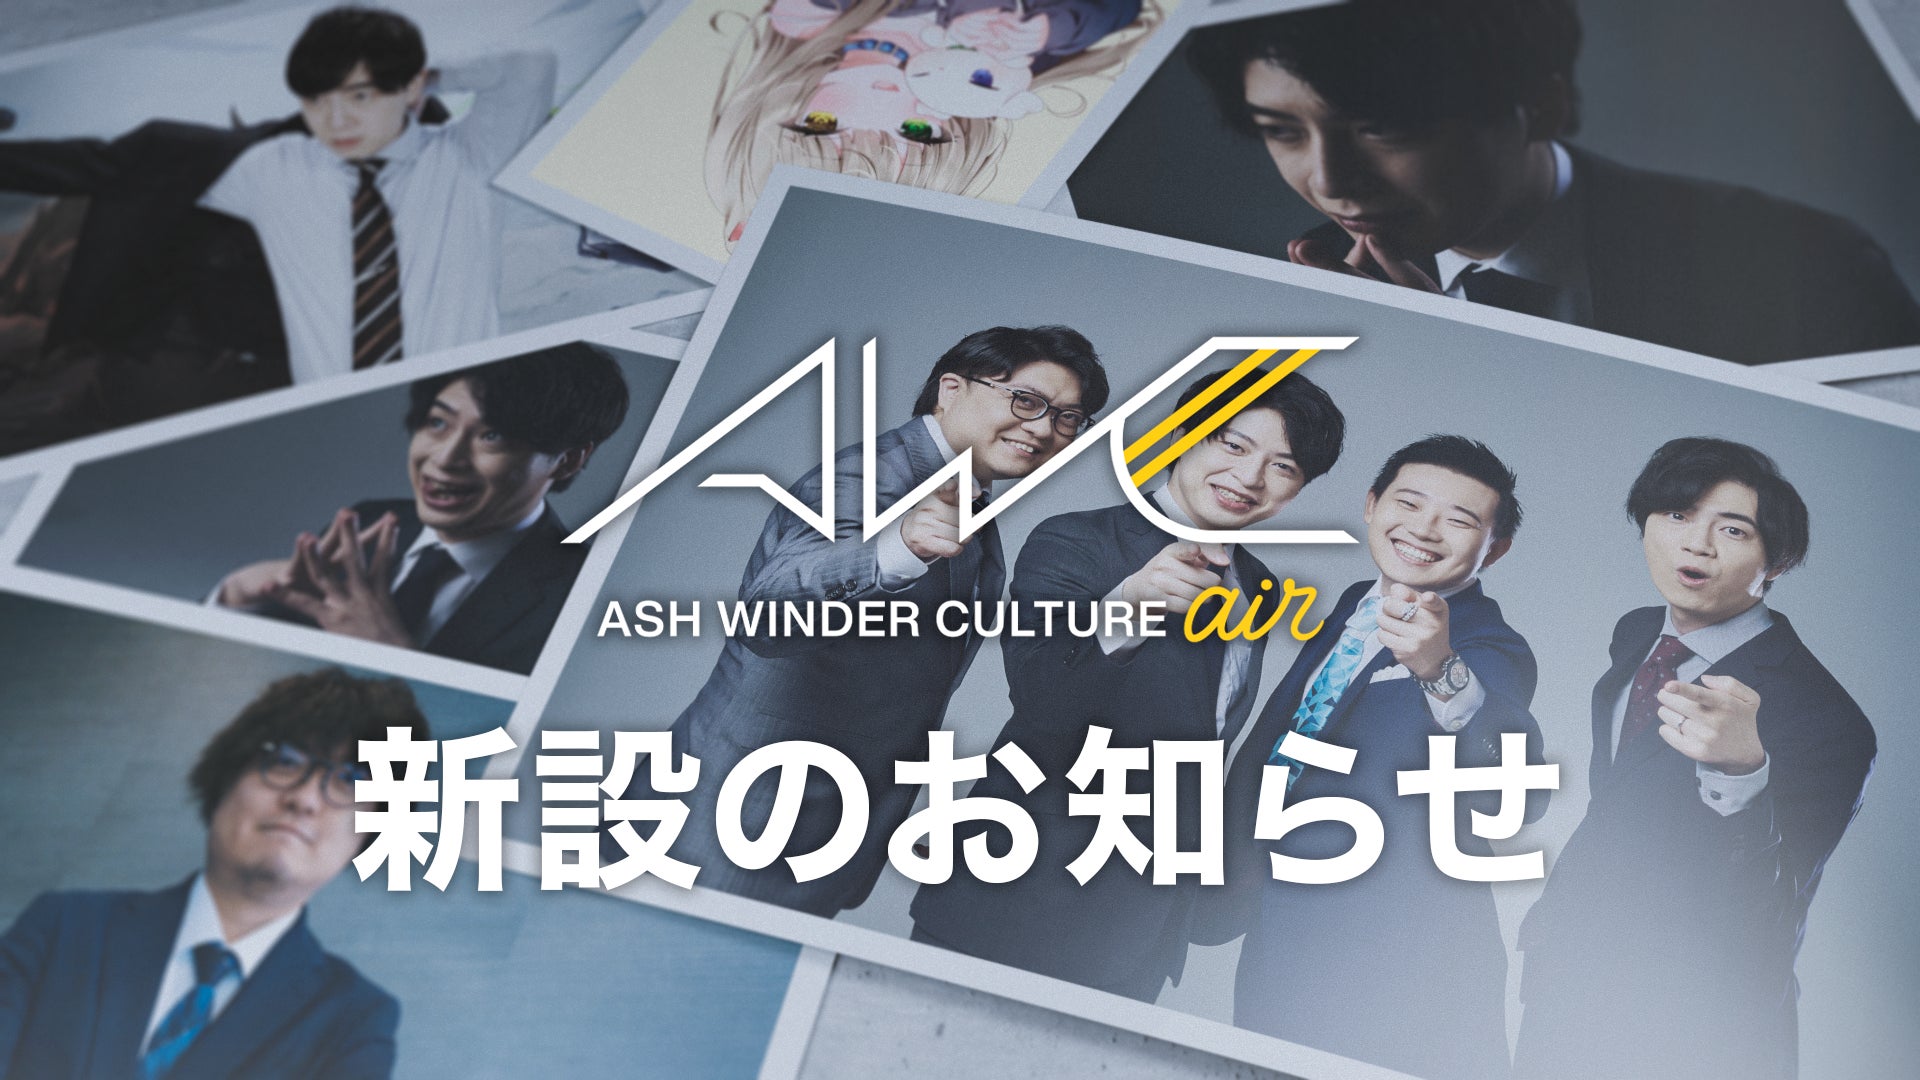 株式会社ASH WINDERが「ASH WINDER CULTURE air」を新設、eスポーツタレント「Retloff」「西井綾音」が加入のサブ画像1